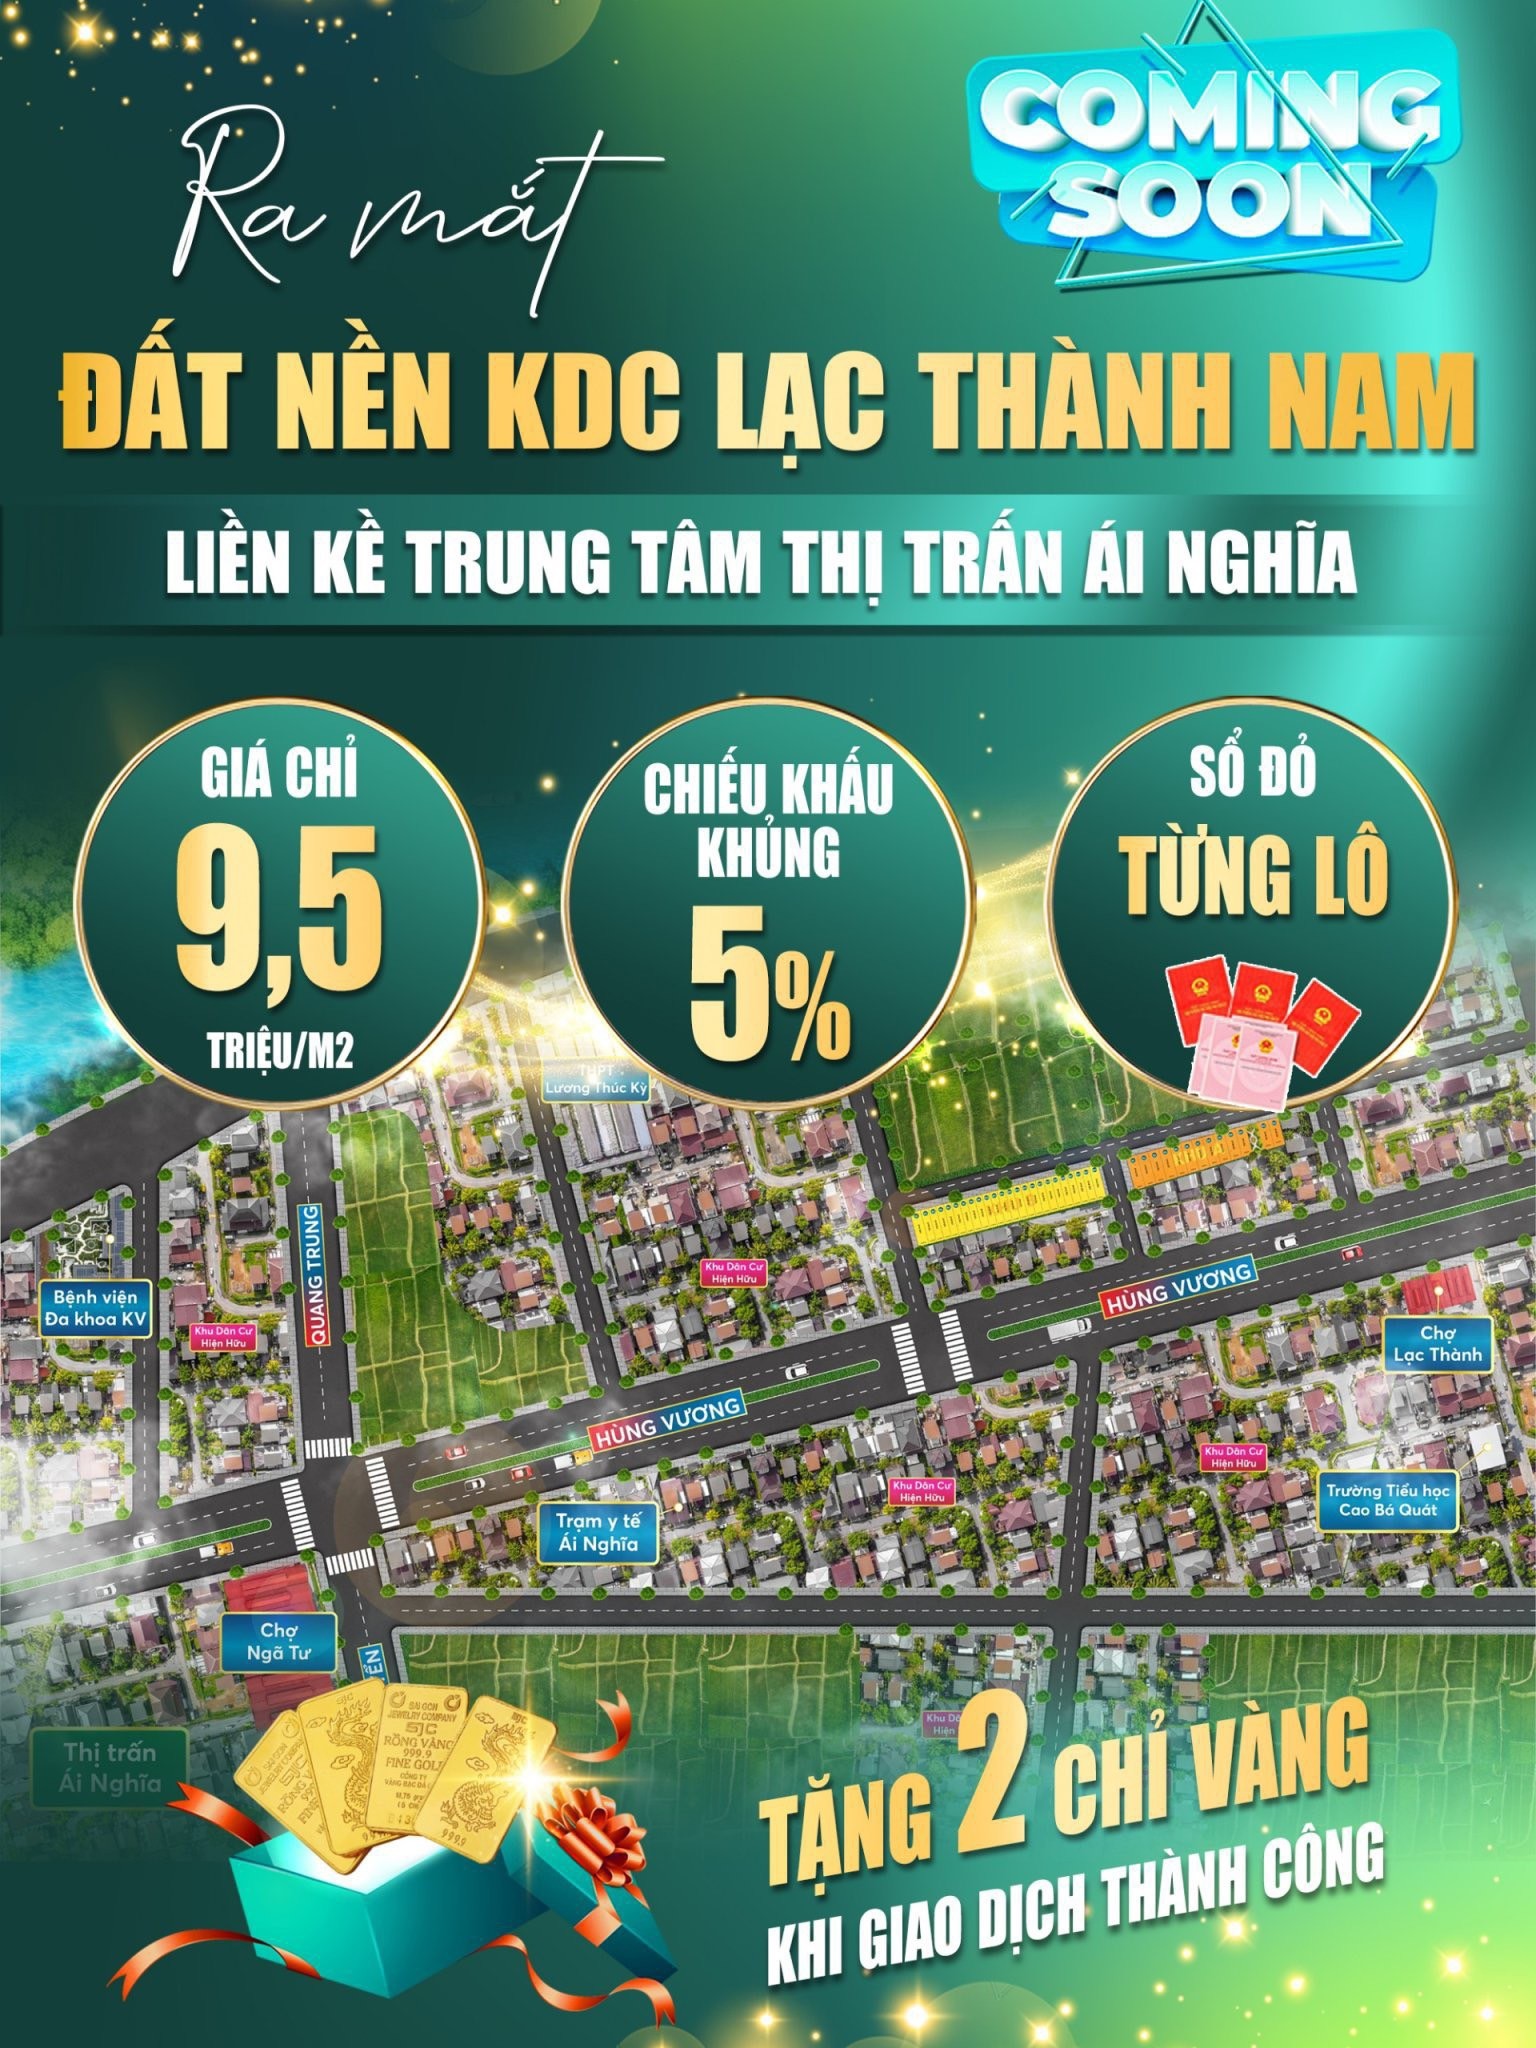 Chính thức công bố đất nền KDC Lạc Thành Nam - Quy mô hoành tráng với nhiều phần quà lớn